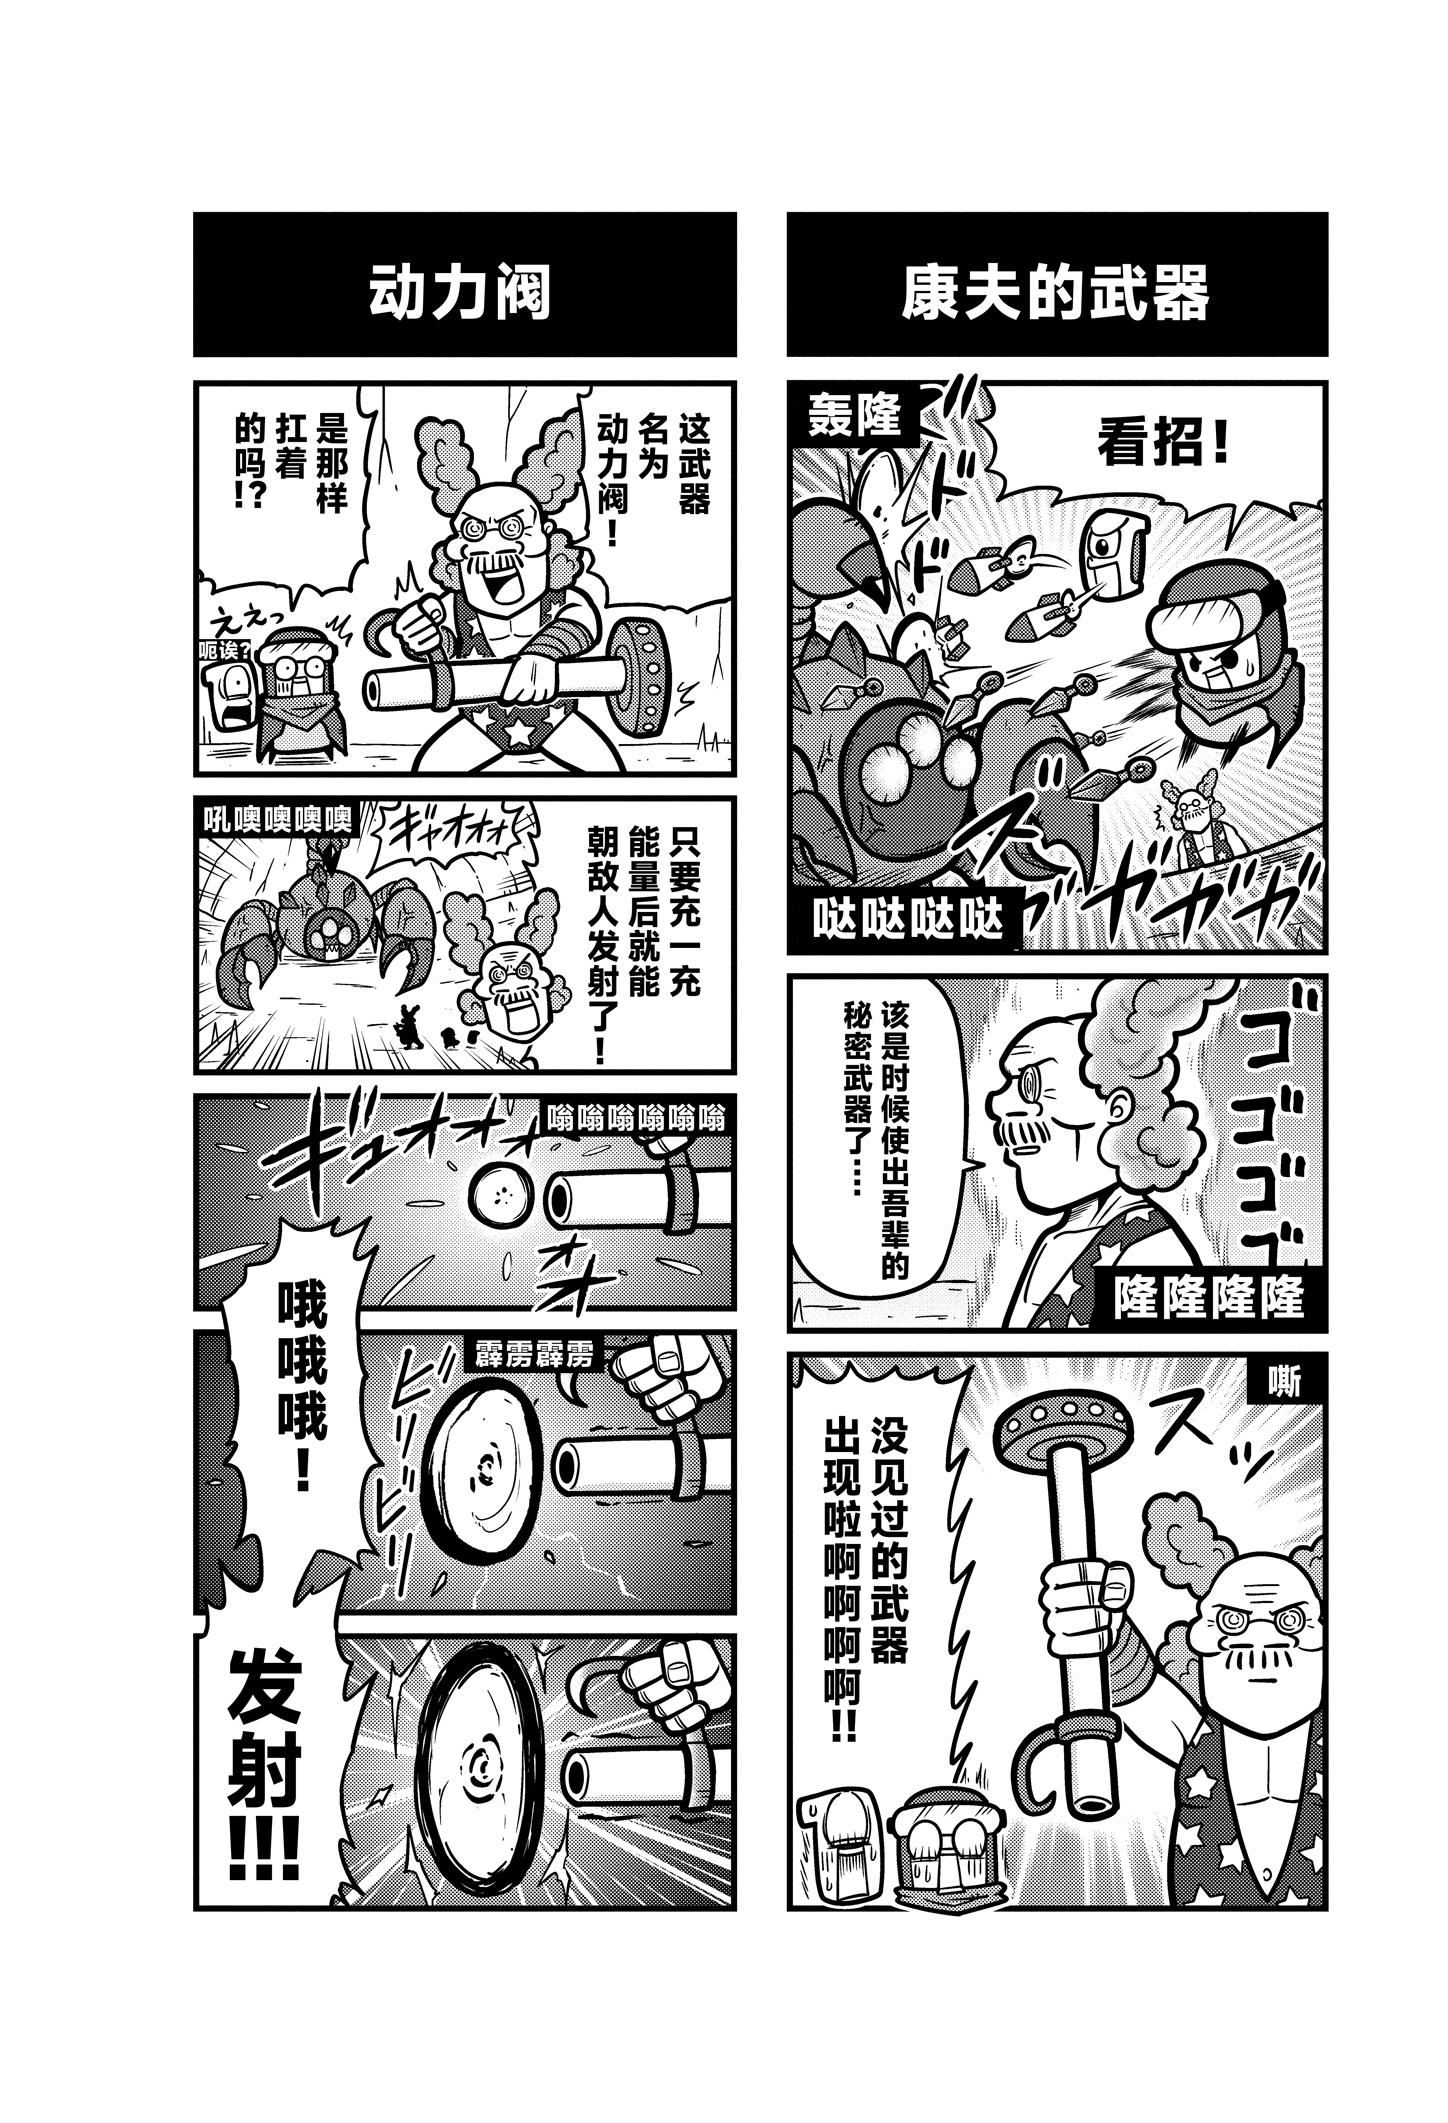 《弹壳特攻队》漫画第40话：全新武器，动力阀亮相！